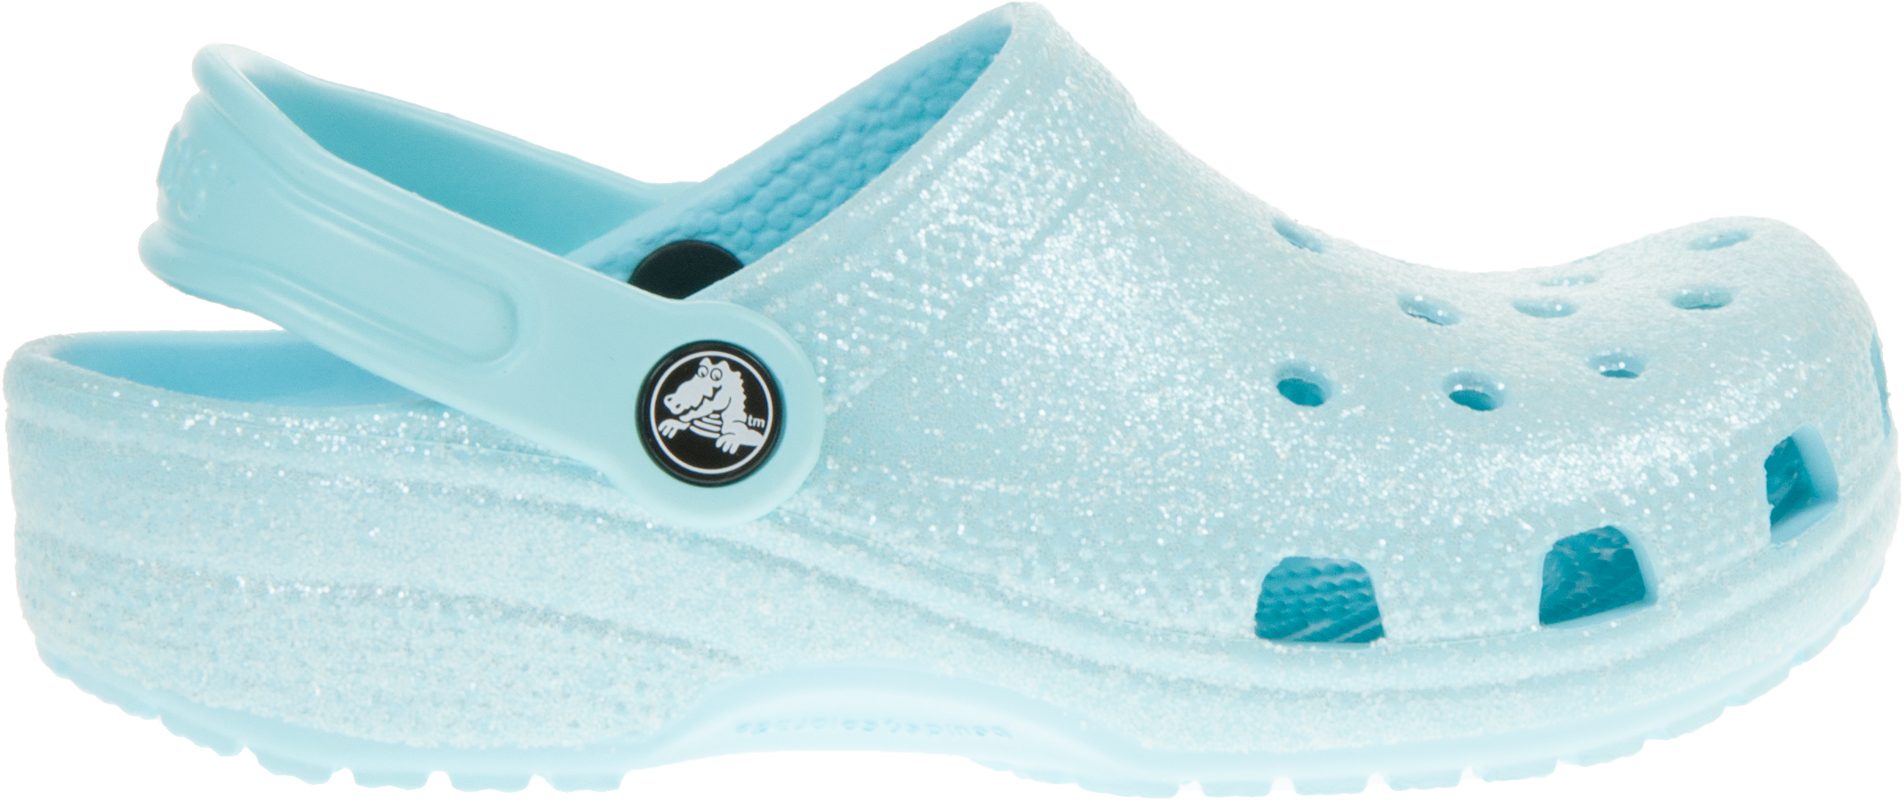 Crocs Kids Classic Clog Ice Blue Glitter 205441-4O9 - Girls Shoes ...